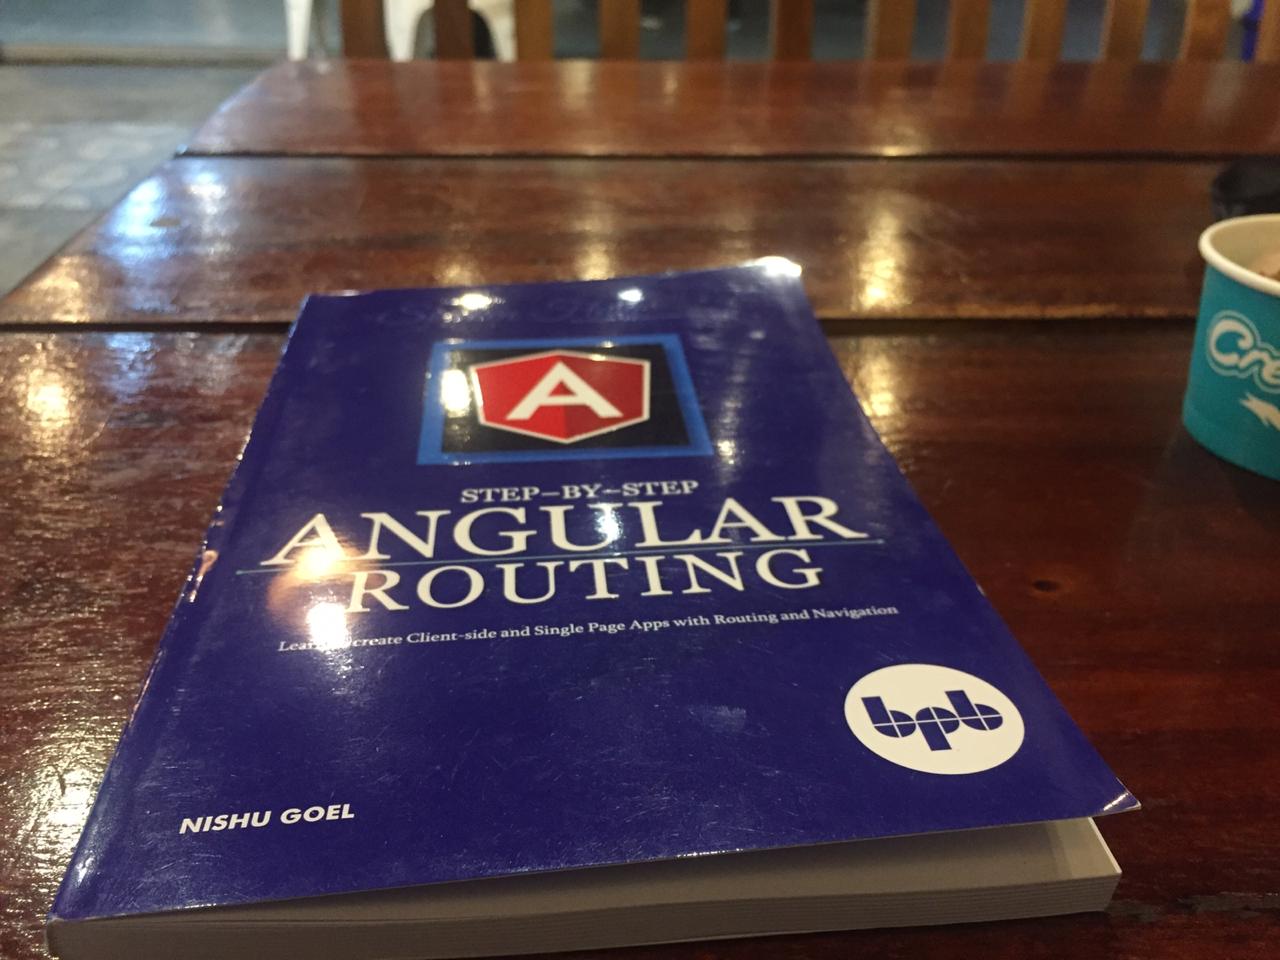 El libro Enrutamiento de Angular sobre una tabla.